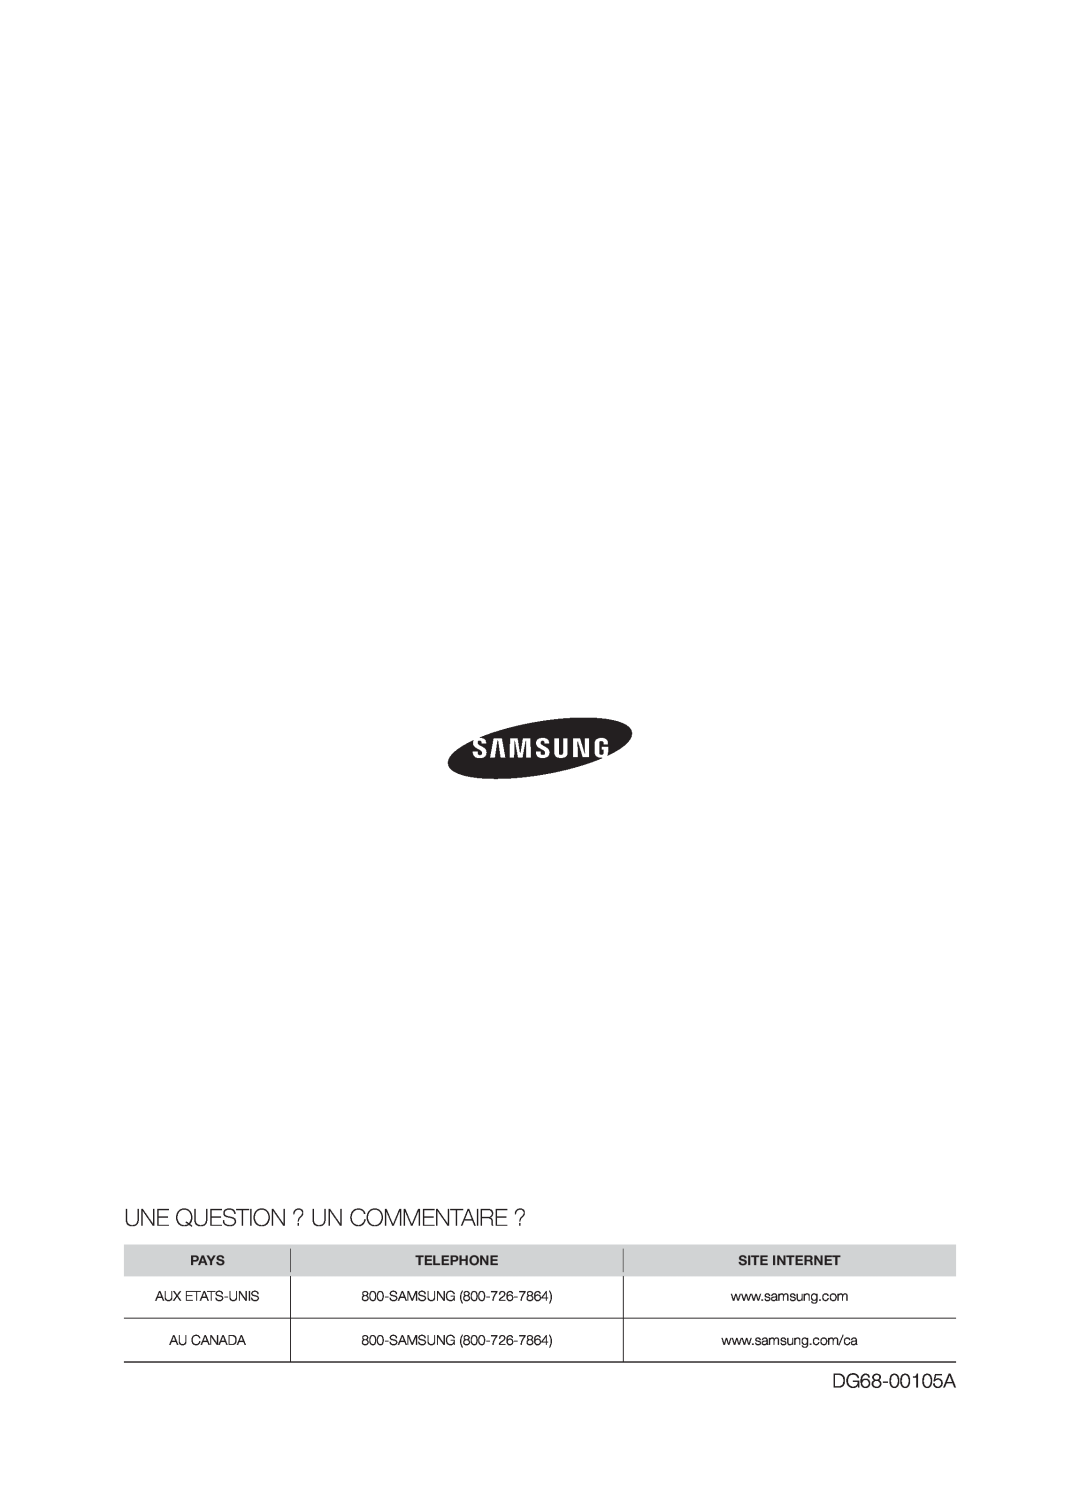 Samsung FTQ386LWX user manual Une Question ? Un Commentaire ?, DG68-00105A, Pays, Telephone, Site Internet 